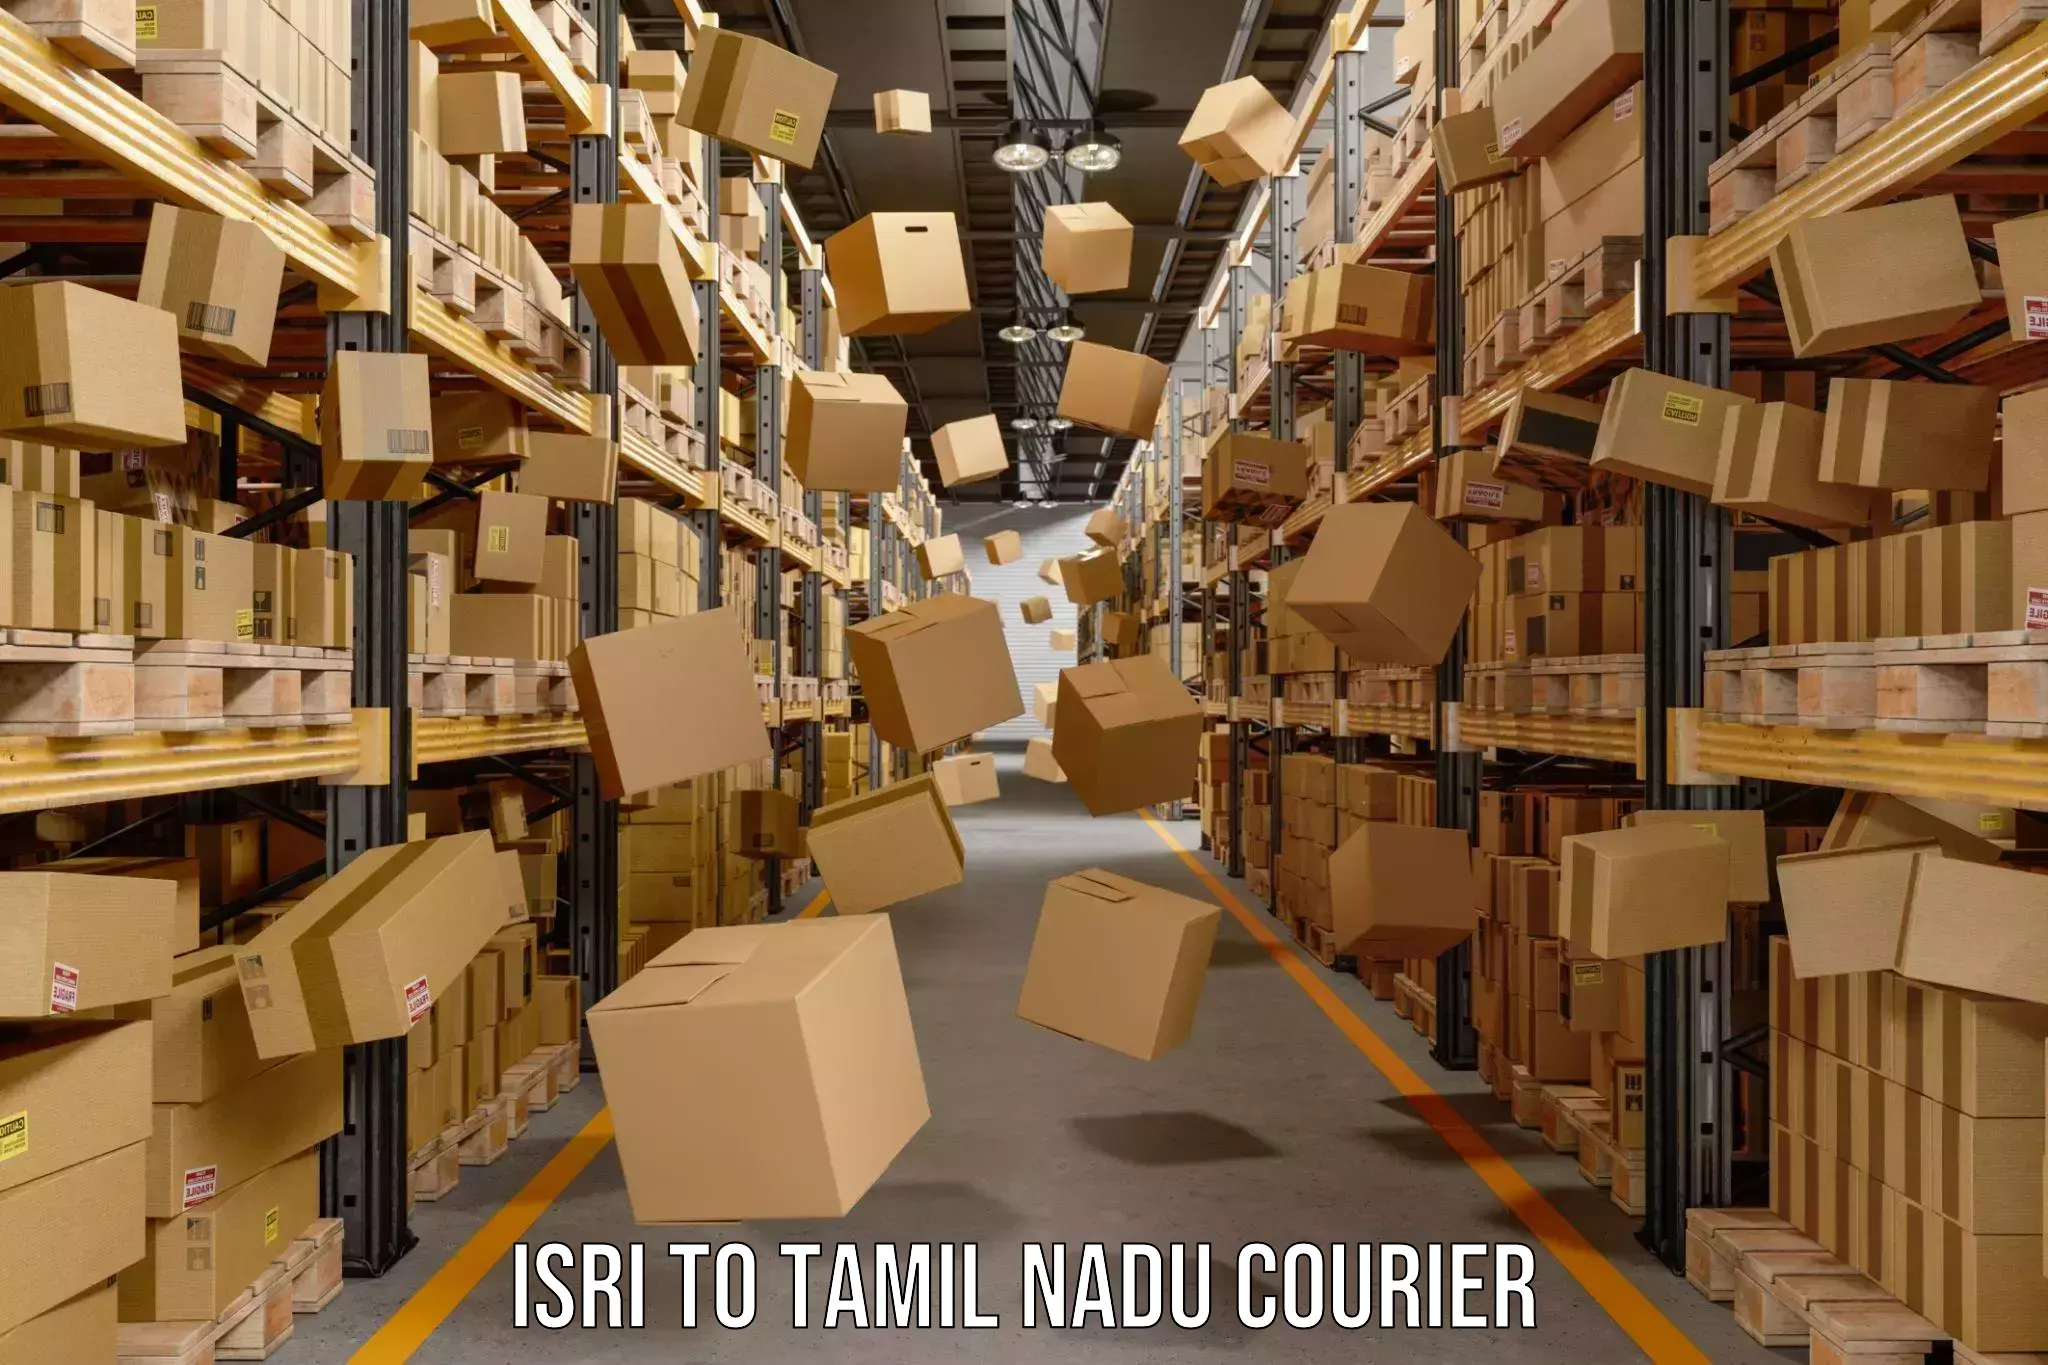 Affordable parcel service Isri to Tamil Nadu